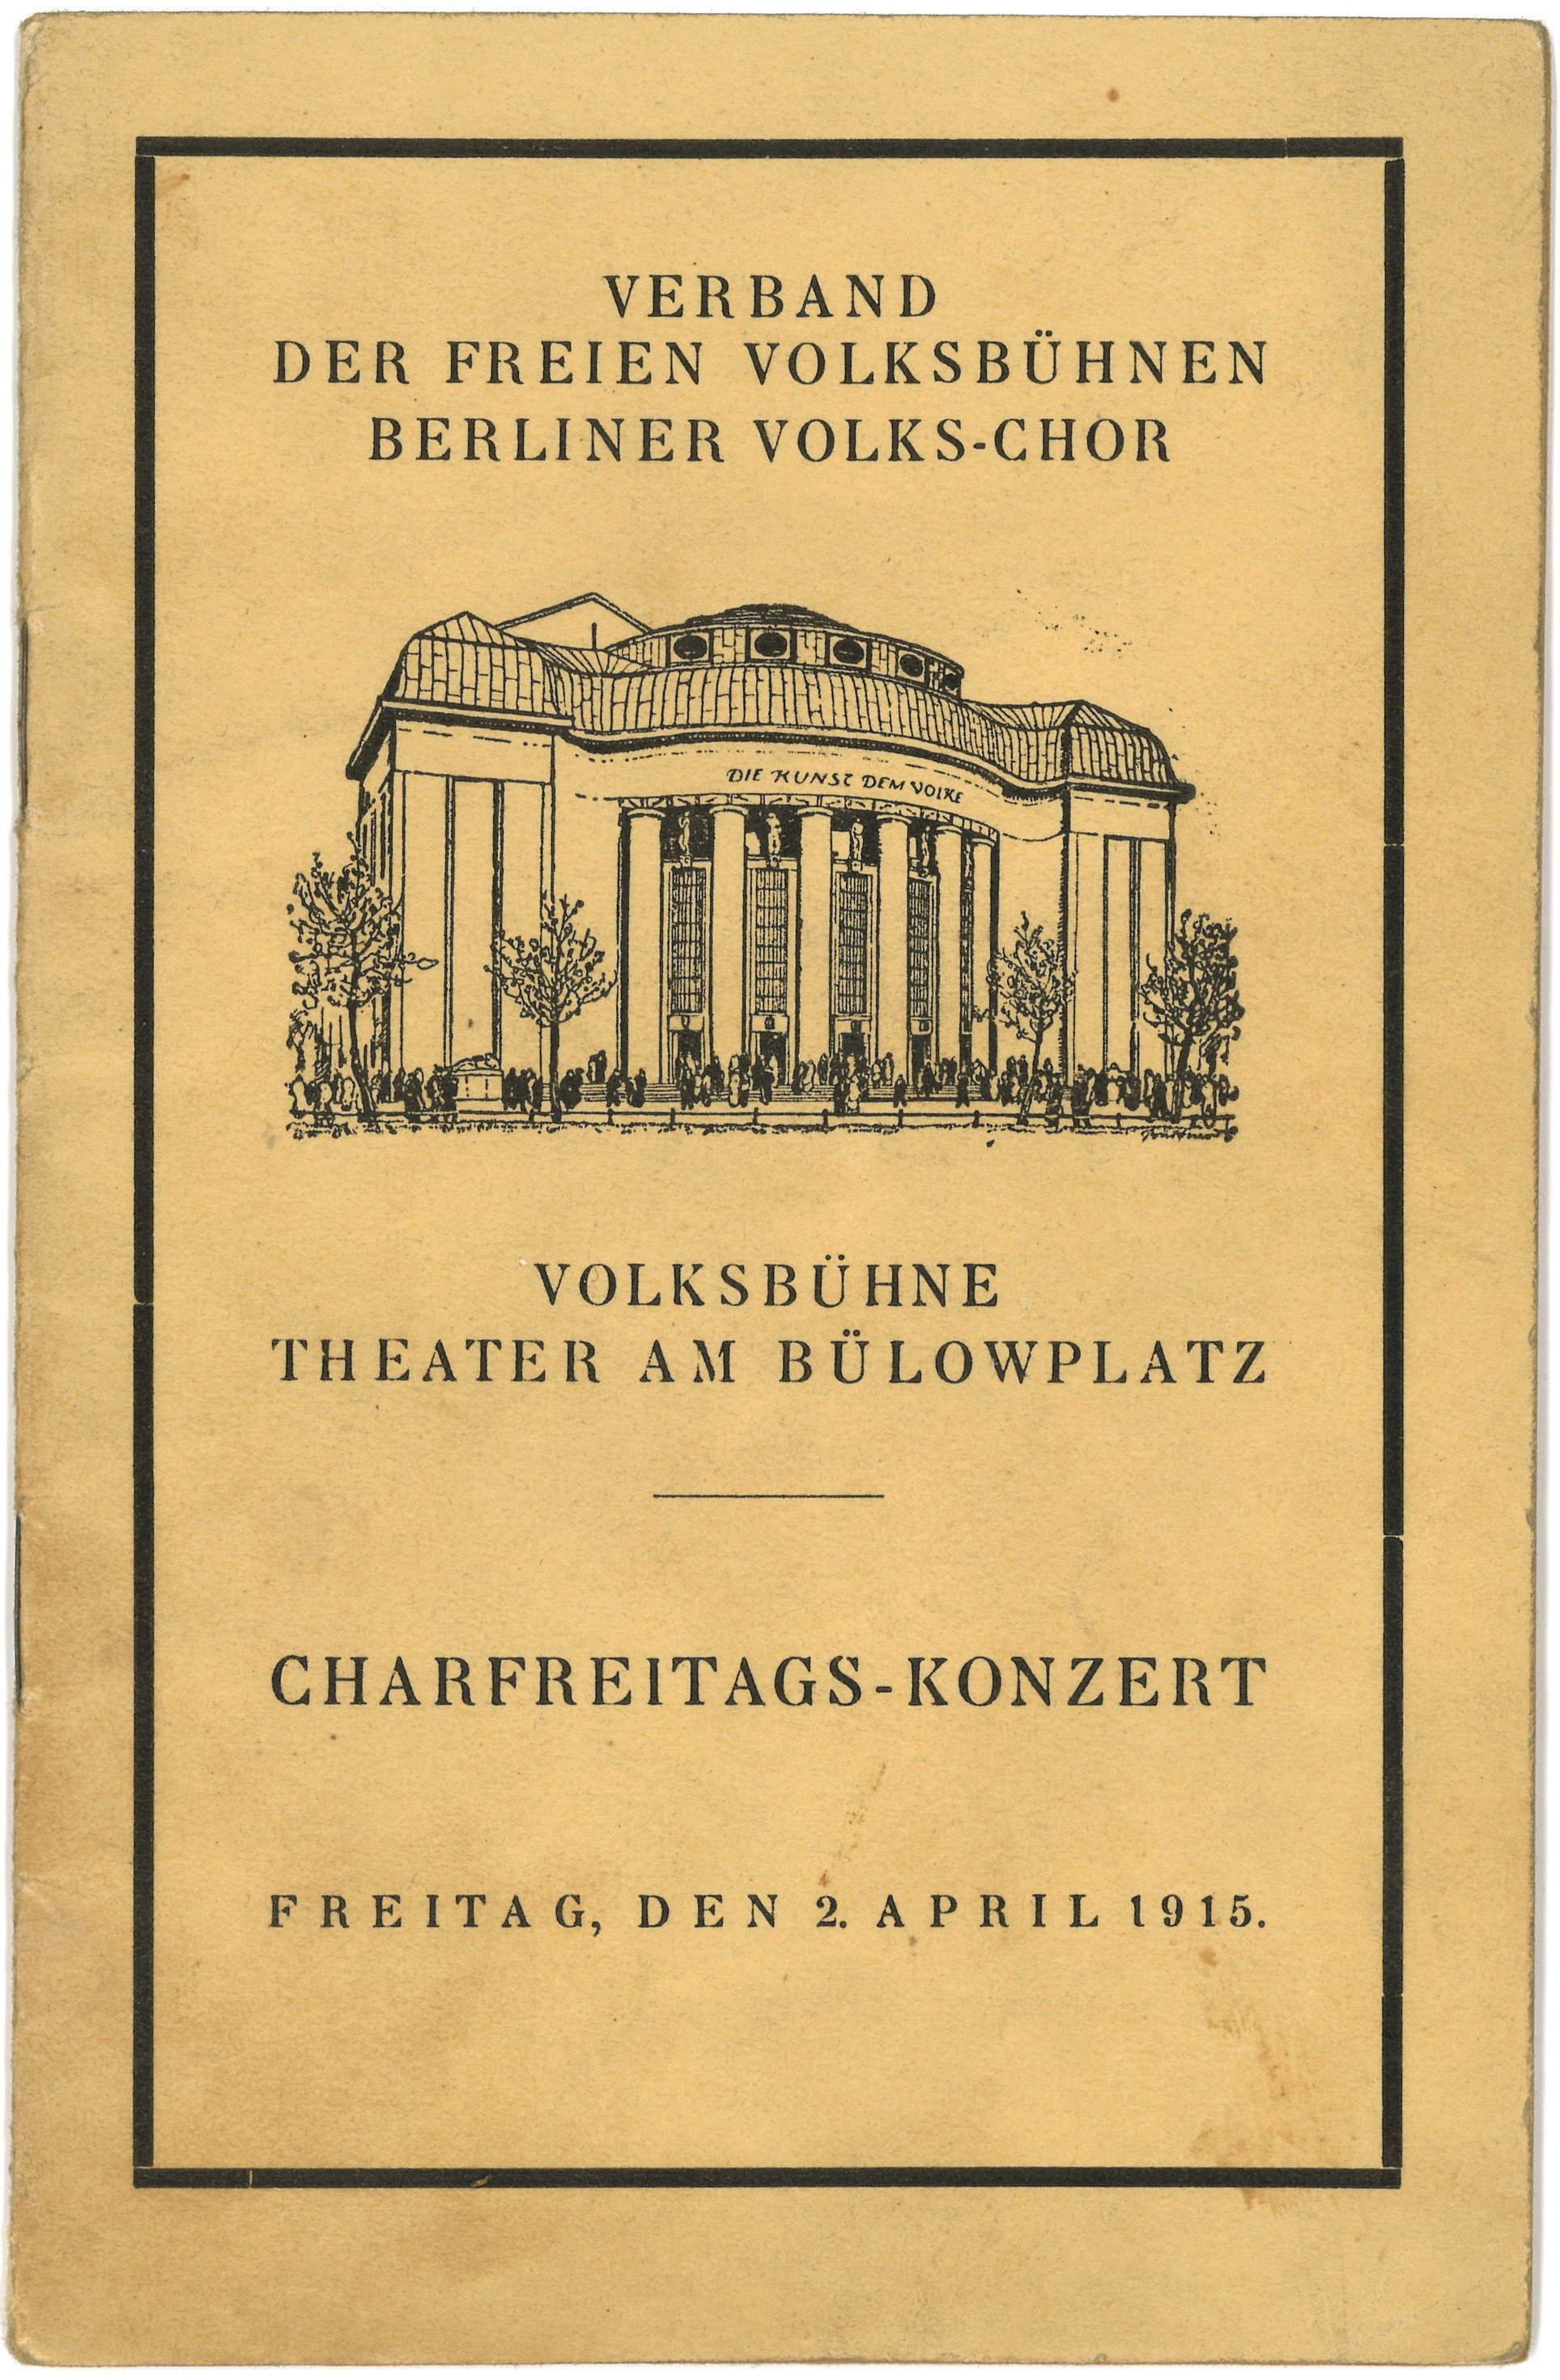 Programm zum Karfreitagskonzert des Berliner Volks-Chors in der Volksbühne 1915 (Landesgeschichtliche Vereinigung für die Mark Brandenburg e.V., Archiv CC BY)